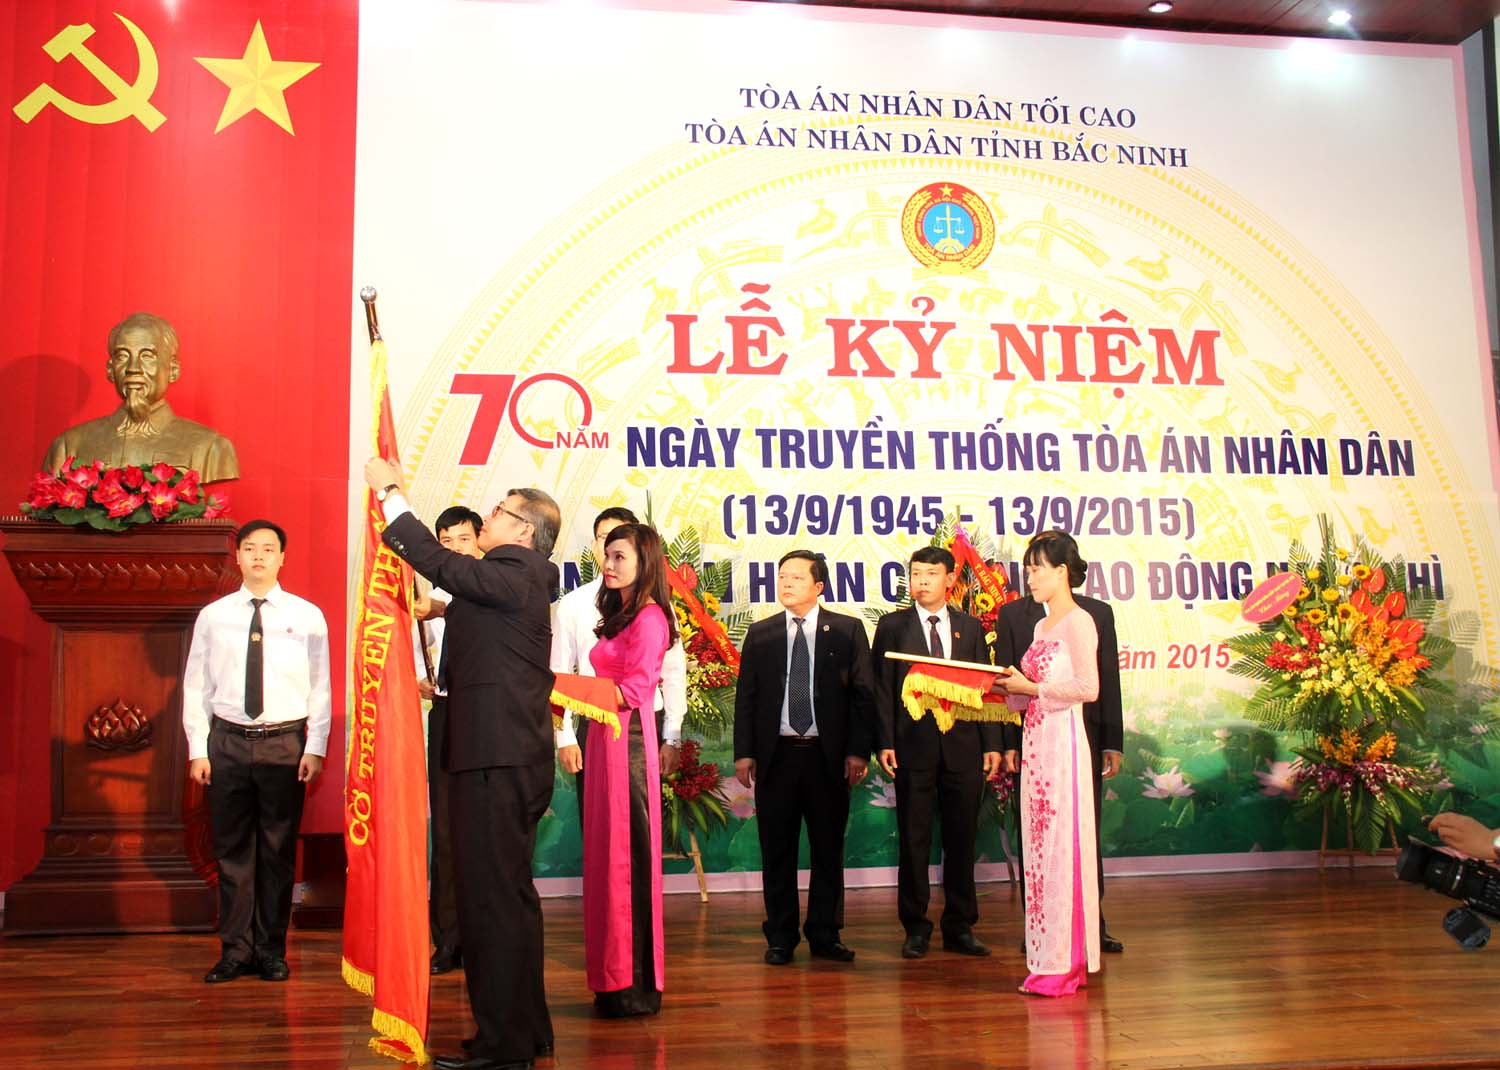 TAND tỉnh Bắc Ninh kỷ niệm 70 năm ngày Truyền thống và đón nhận Huân chương Lao động hạng Nhì